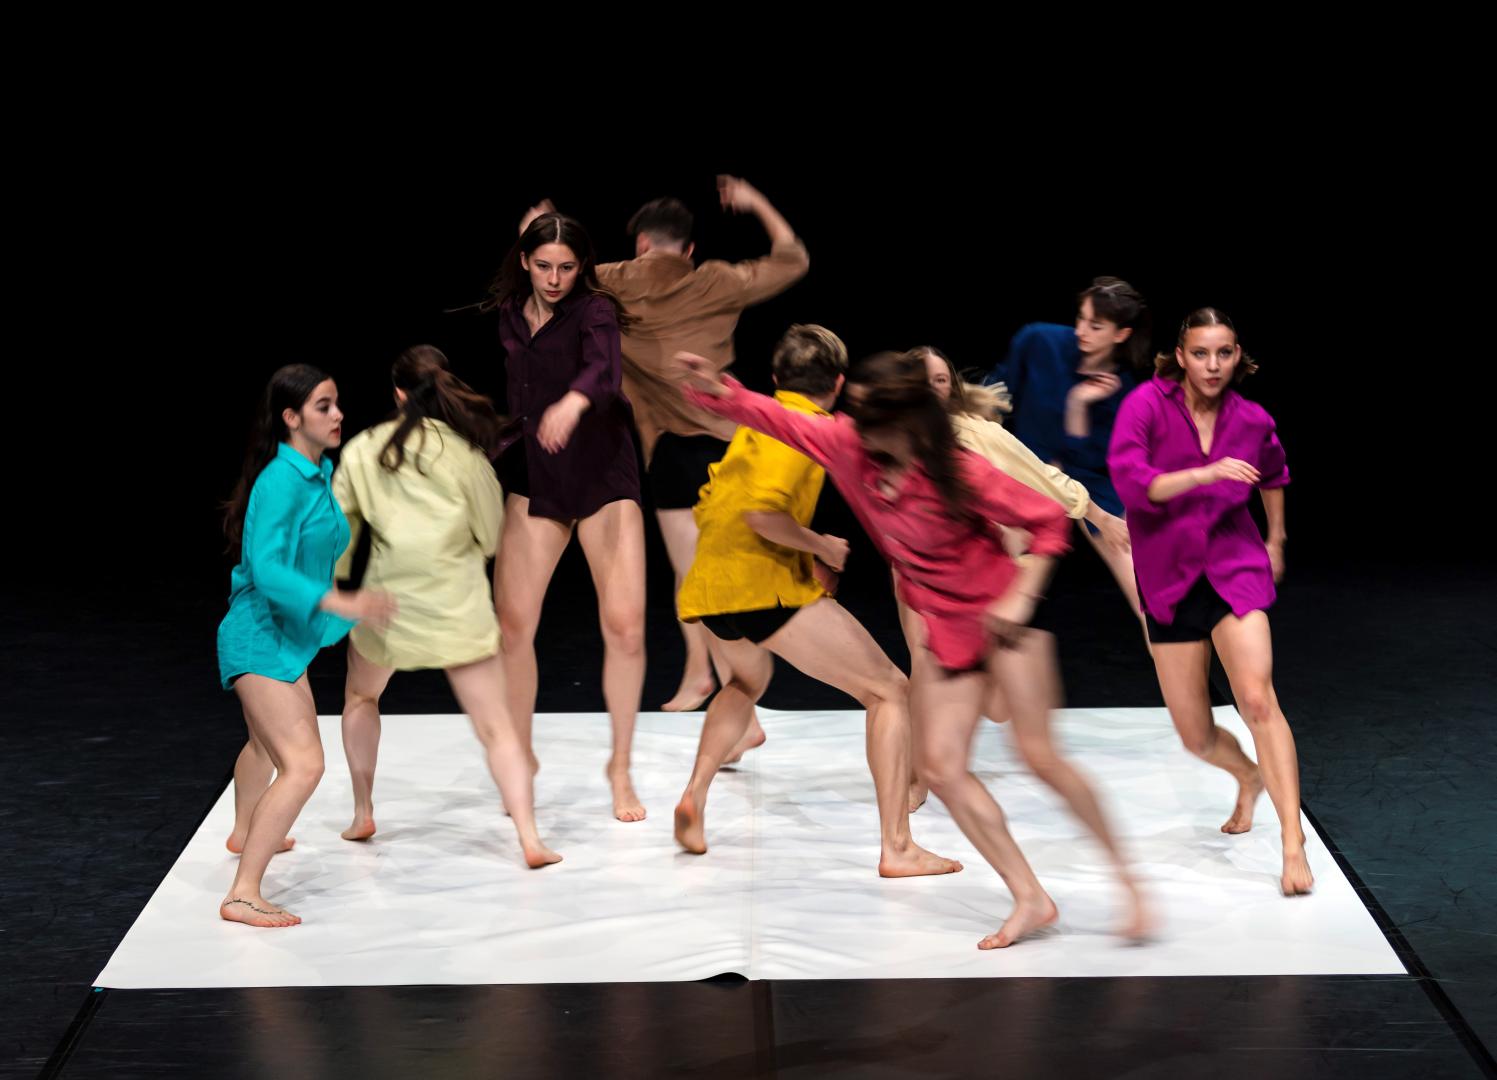 Gruppe von 8 Tänzer*innen in bunten Hemden, in dynamischer Bewegung fotografier.